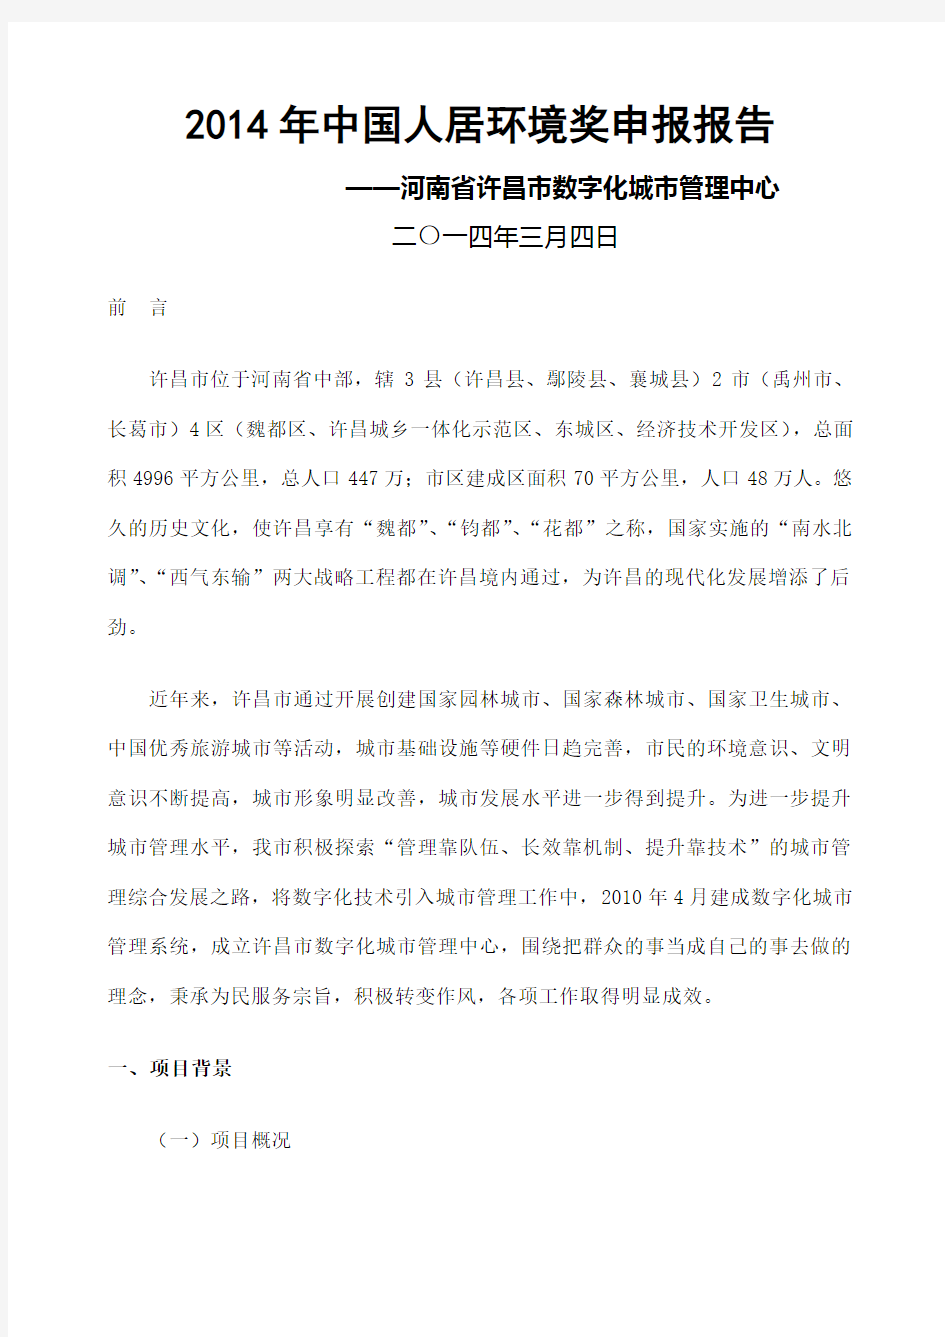 中国人居环境奖申报报告 格式版 